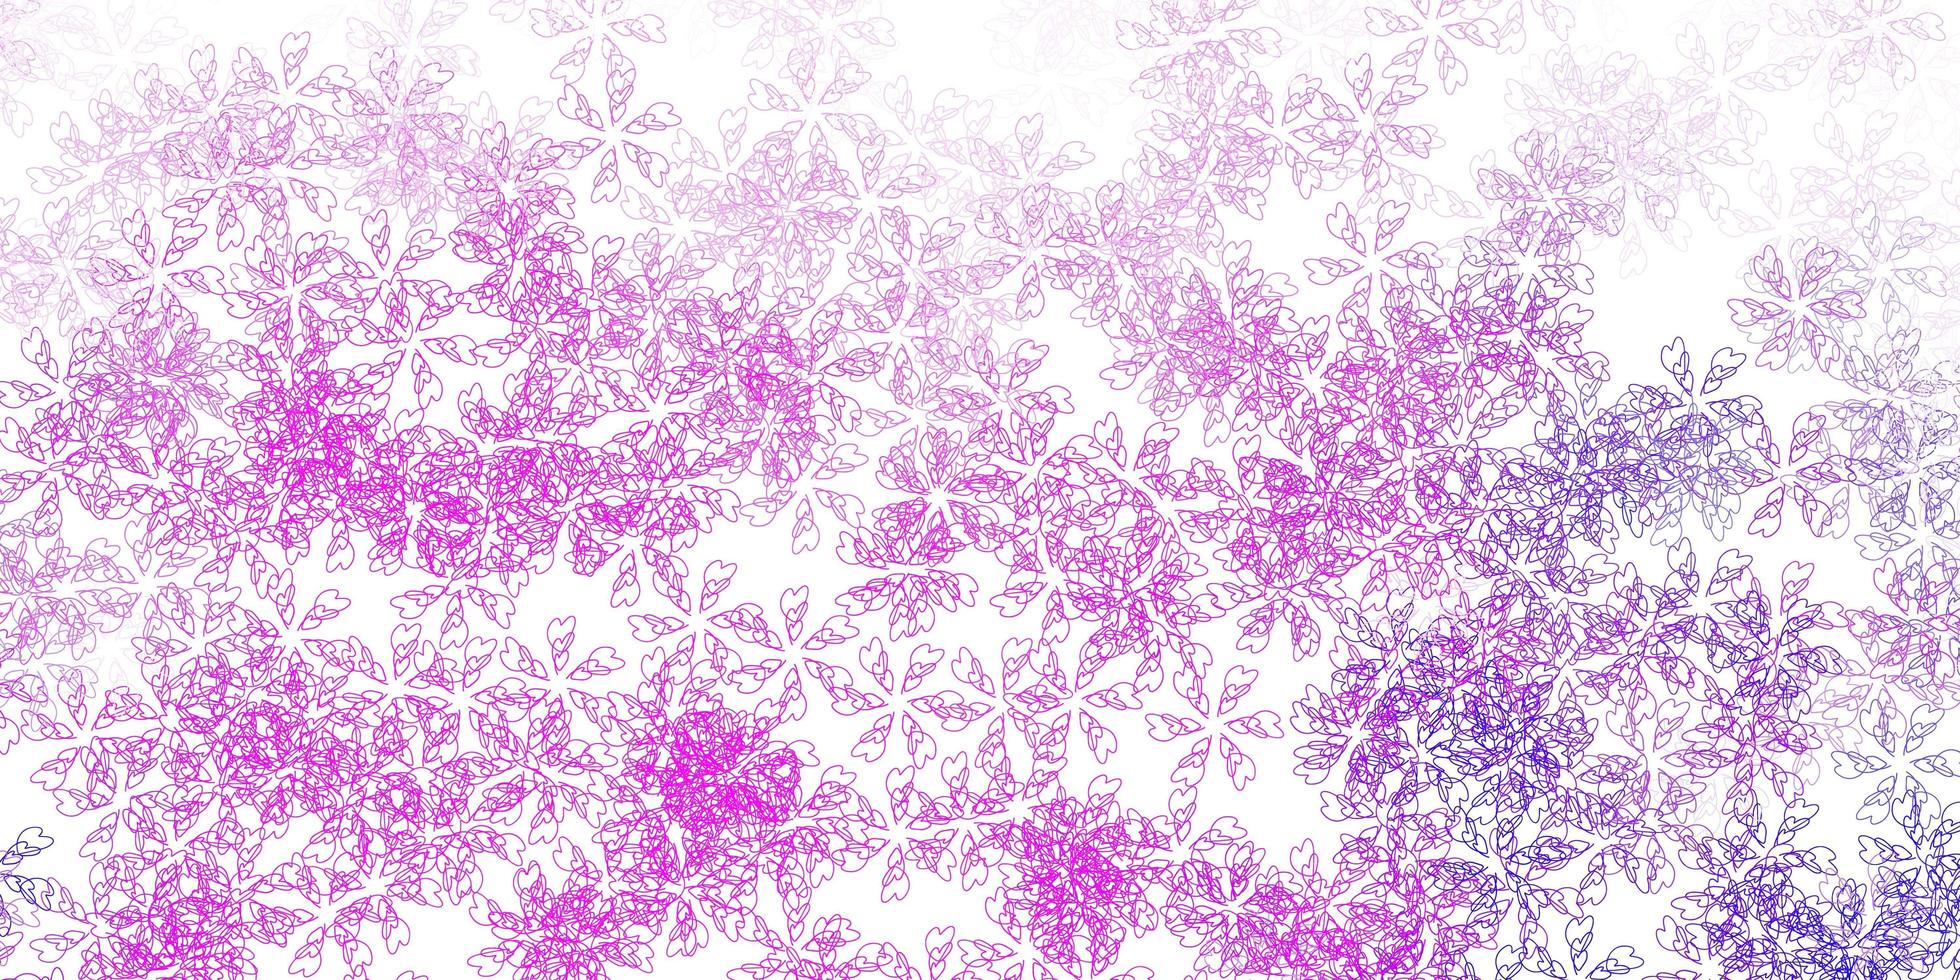 Telón de fondo abstracto de vector violeta, rosa claro con hojas.